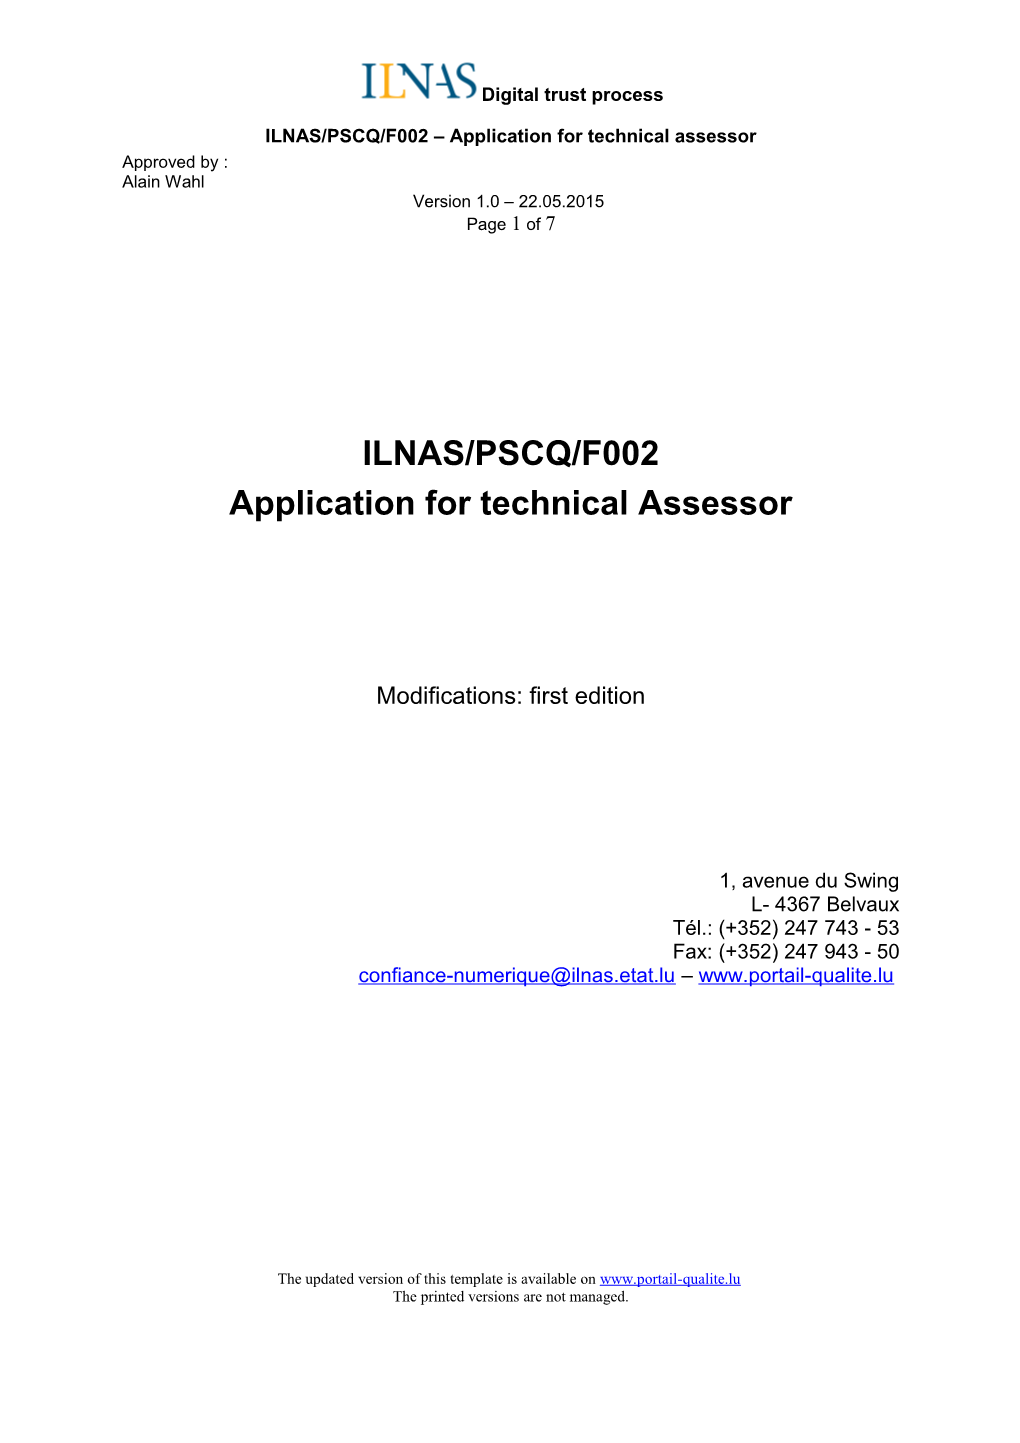 Application for Technical Assessor